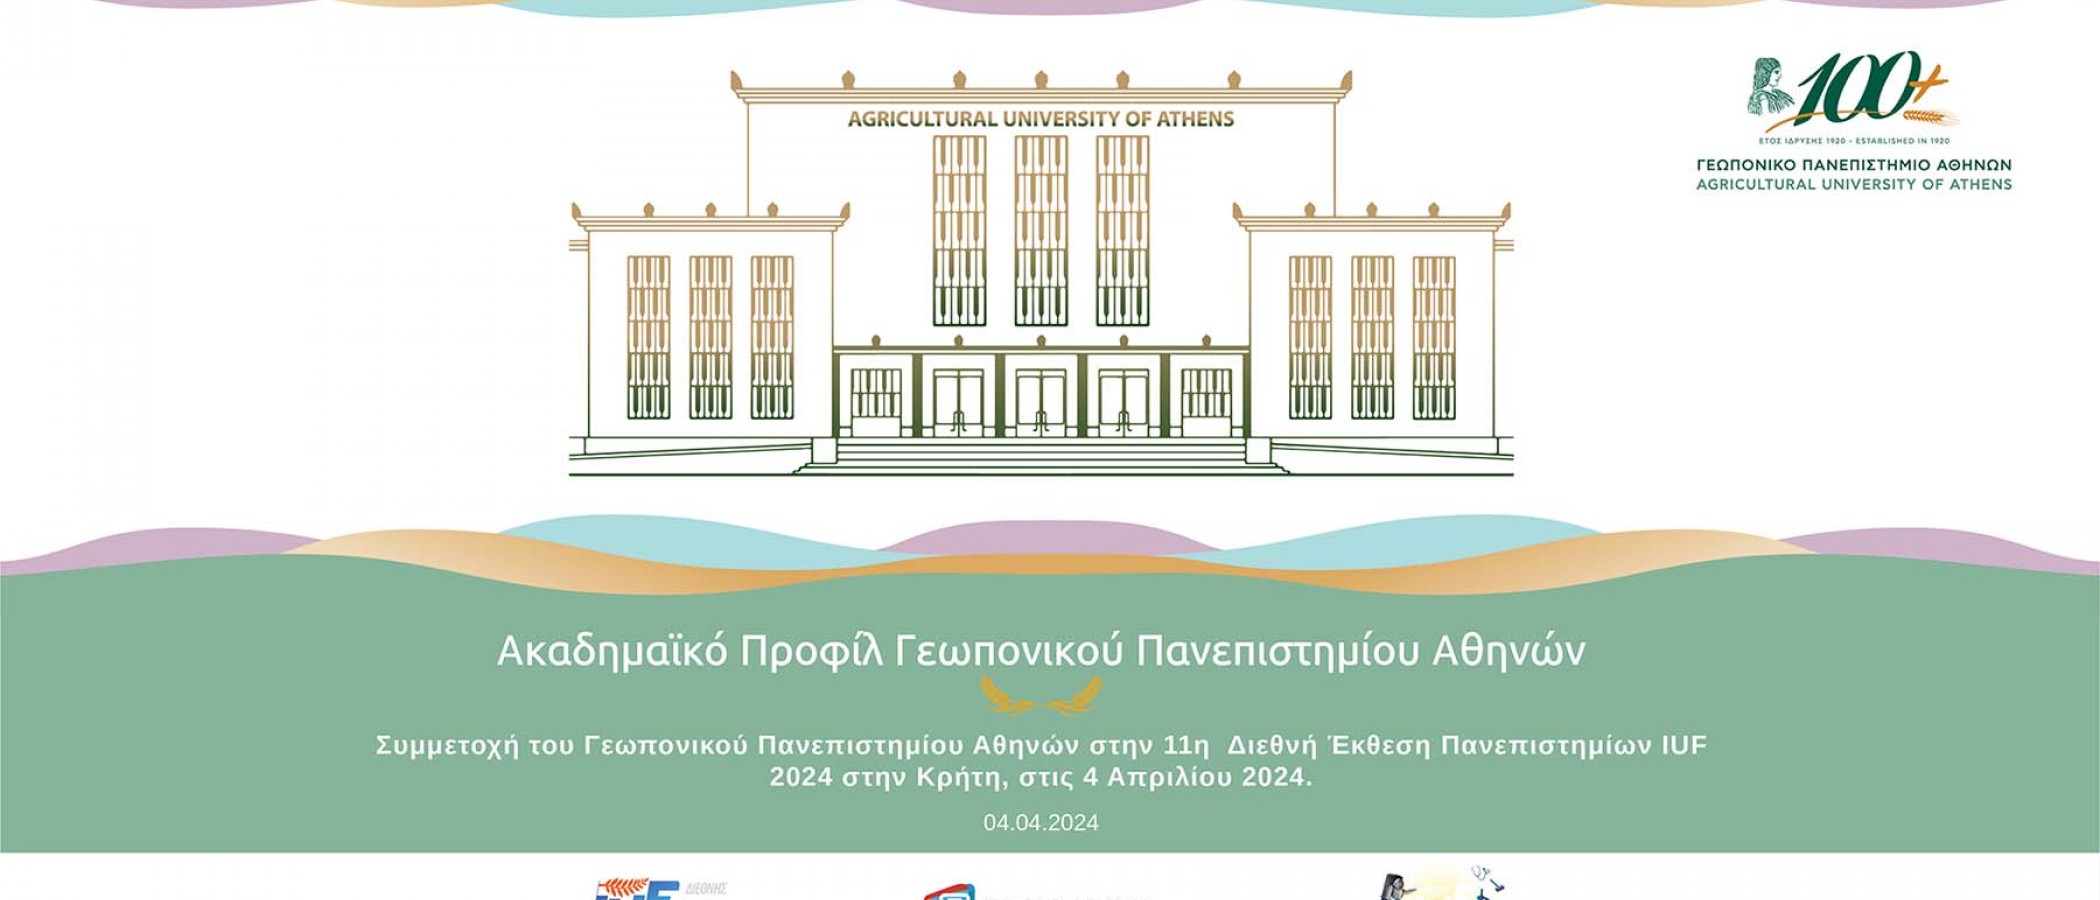 Συμμετοχή του Γεωπονικού Πανεπιστημίου Αθηνών στην 11η Διεθνή Έκθεση Πανεπιστημίων IUF, στο Ελληνικό Μεσογειακό Πανεπιστήμιο, στο Ηράκλειο Κρήτης και ώρα 14:00 - 19:00, στις 4 Απριλίου 2024